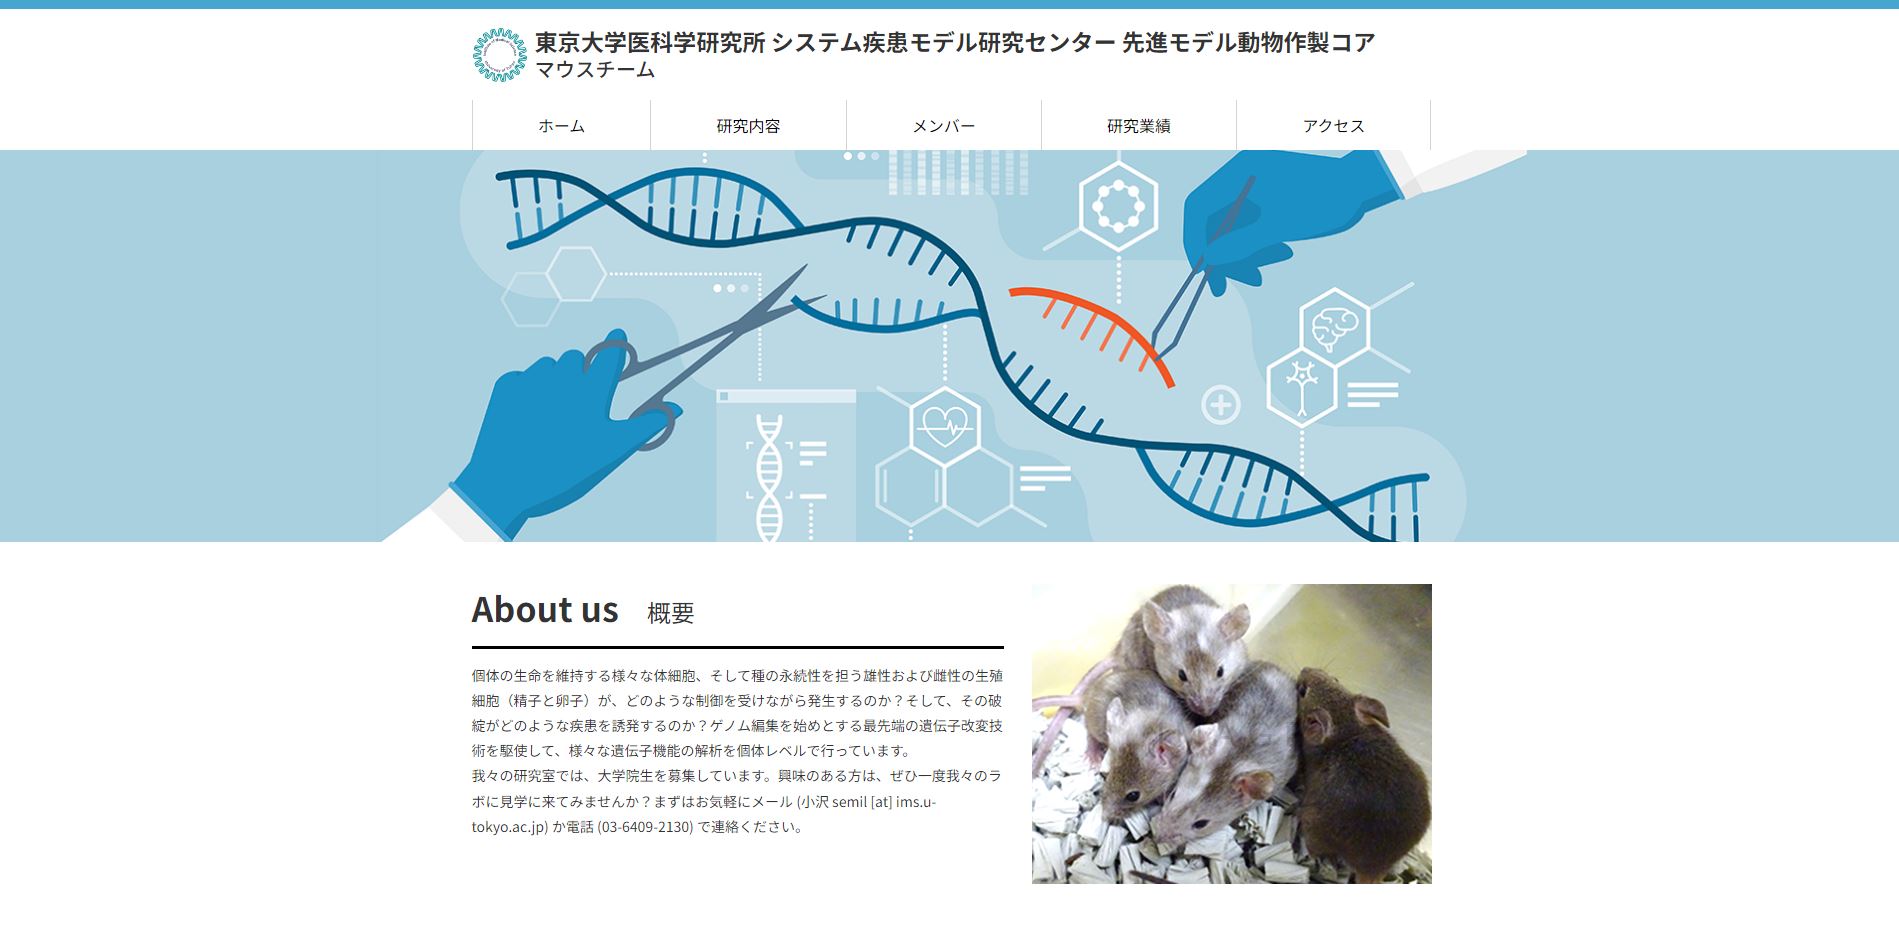 東京大学医科学研究所 システム疾患モデル研究センター 先進モデル動物作製コア マウスチーム